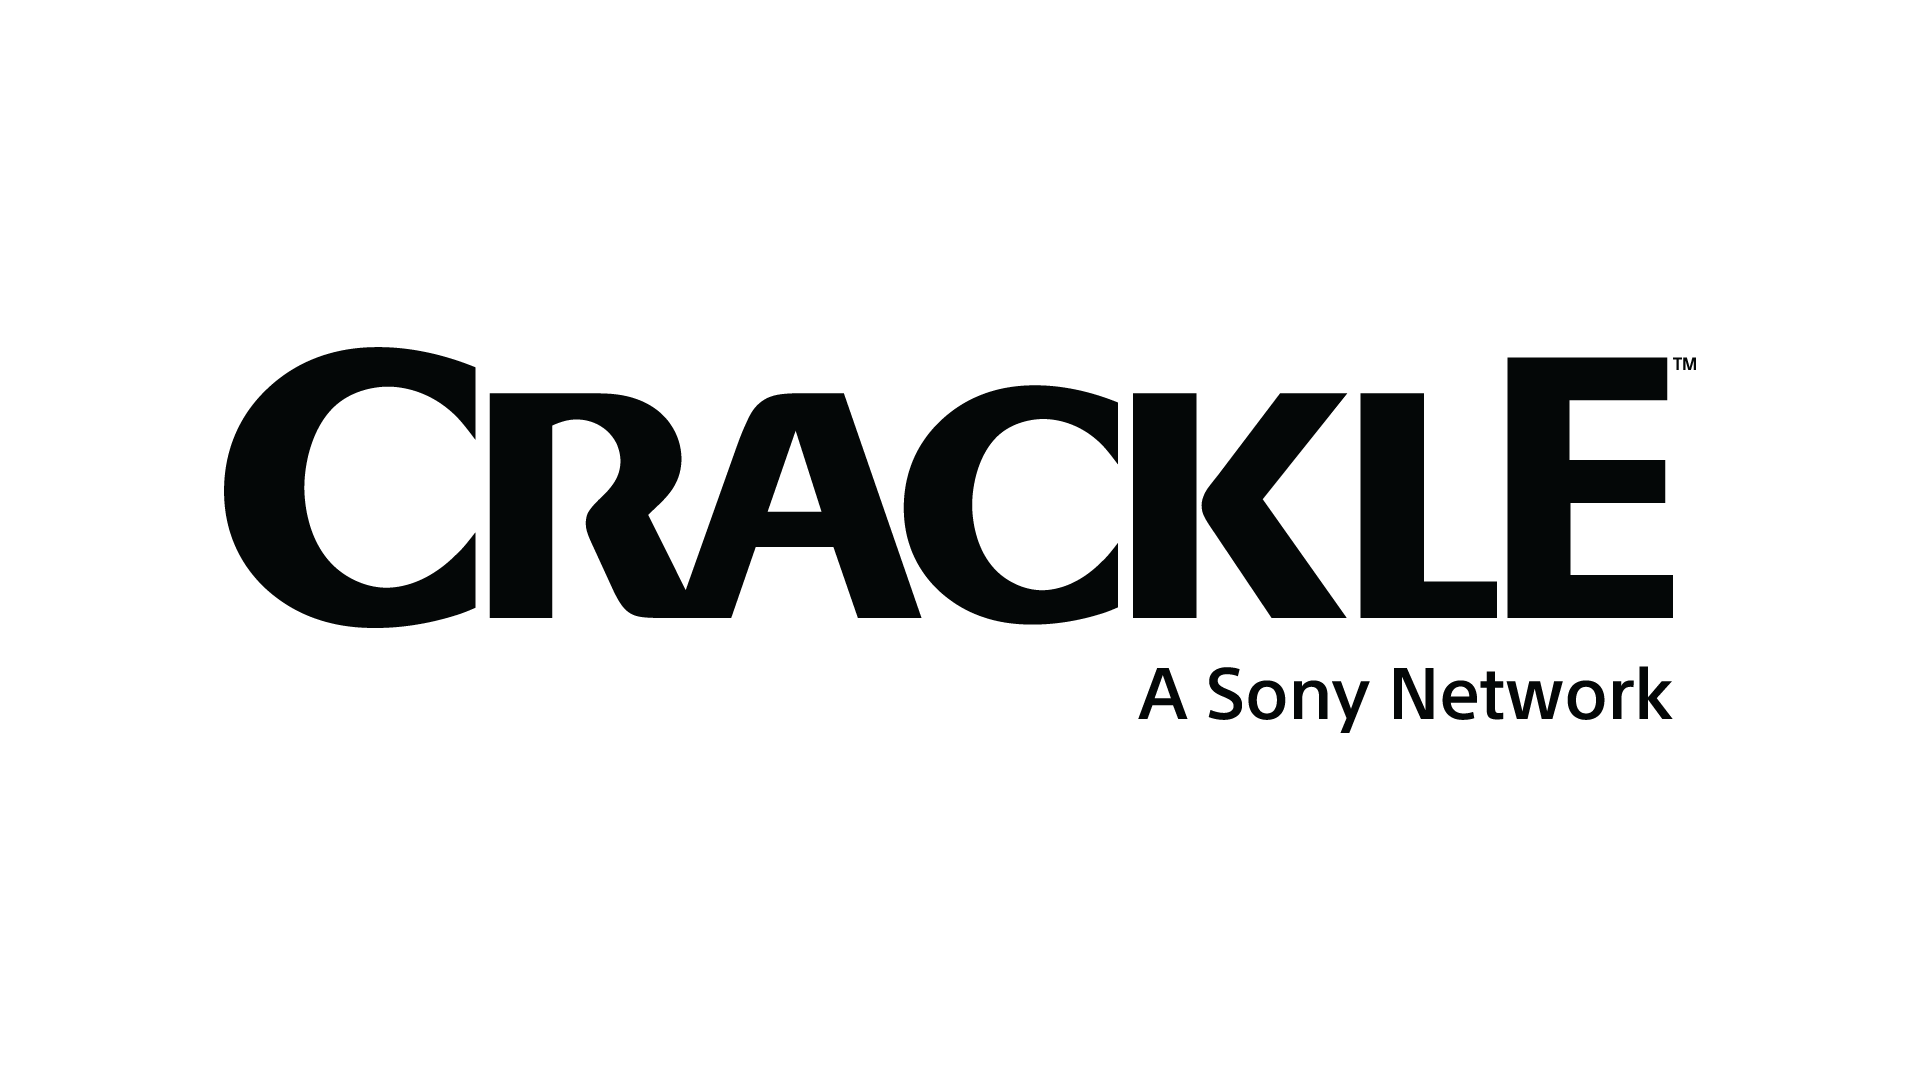 Crackle logo